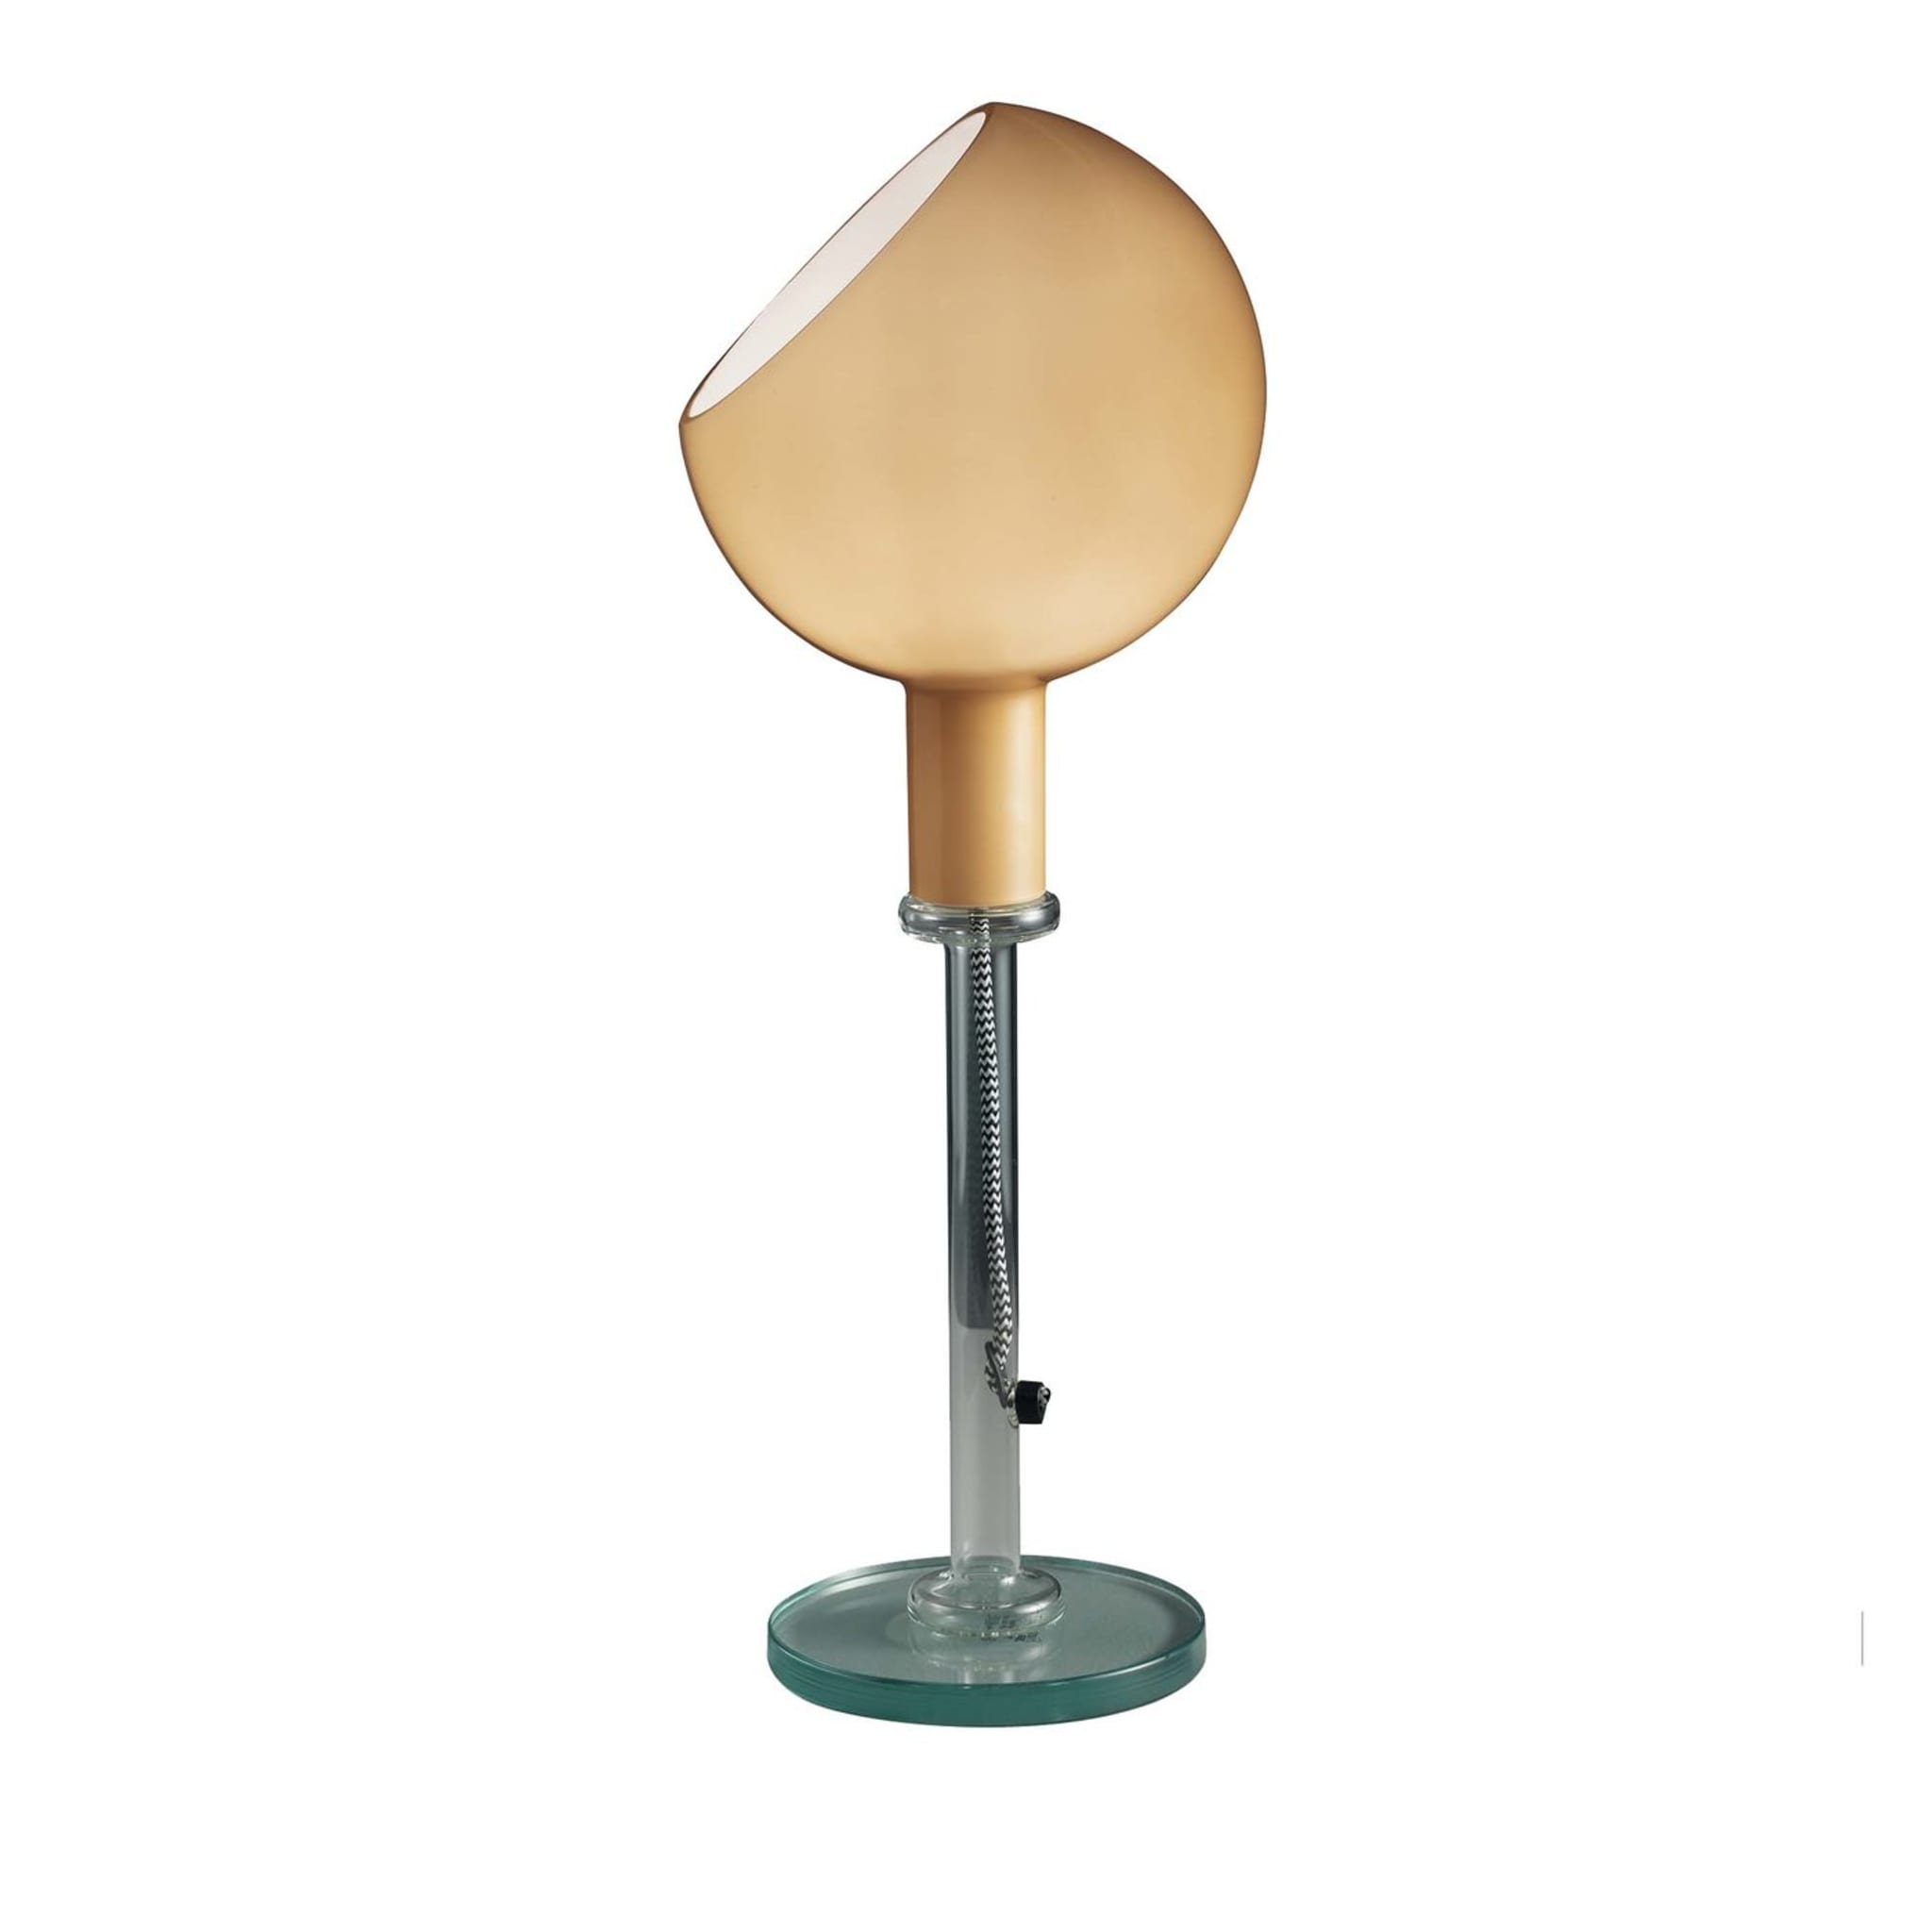 Parola Table Lamp by Gae Aulenti and Piero Castiglioni - Main view